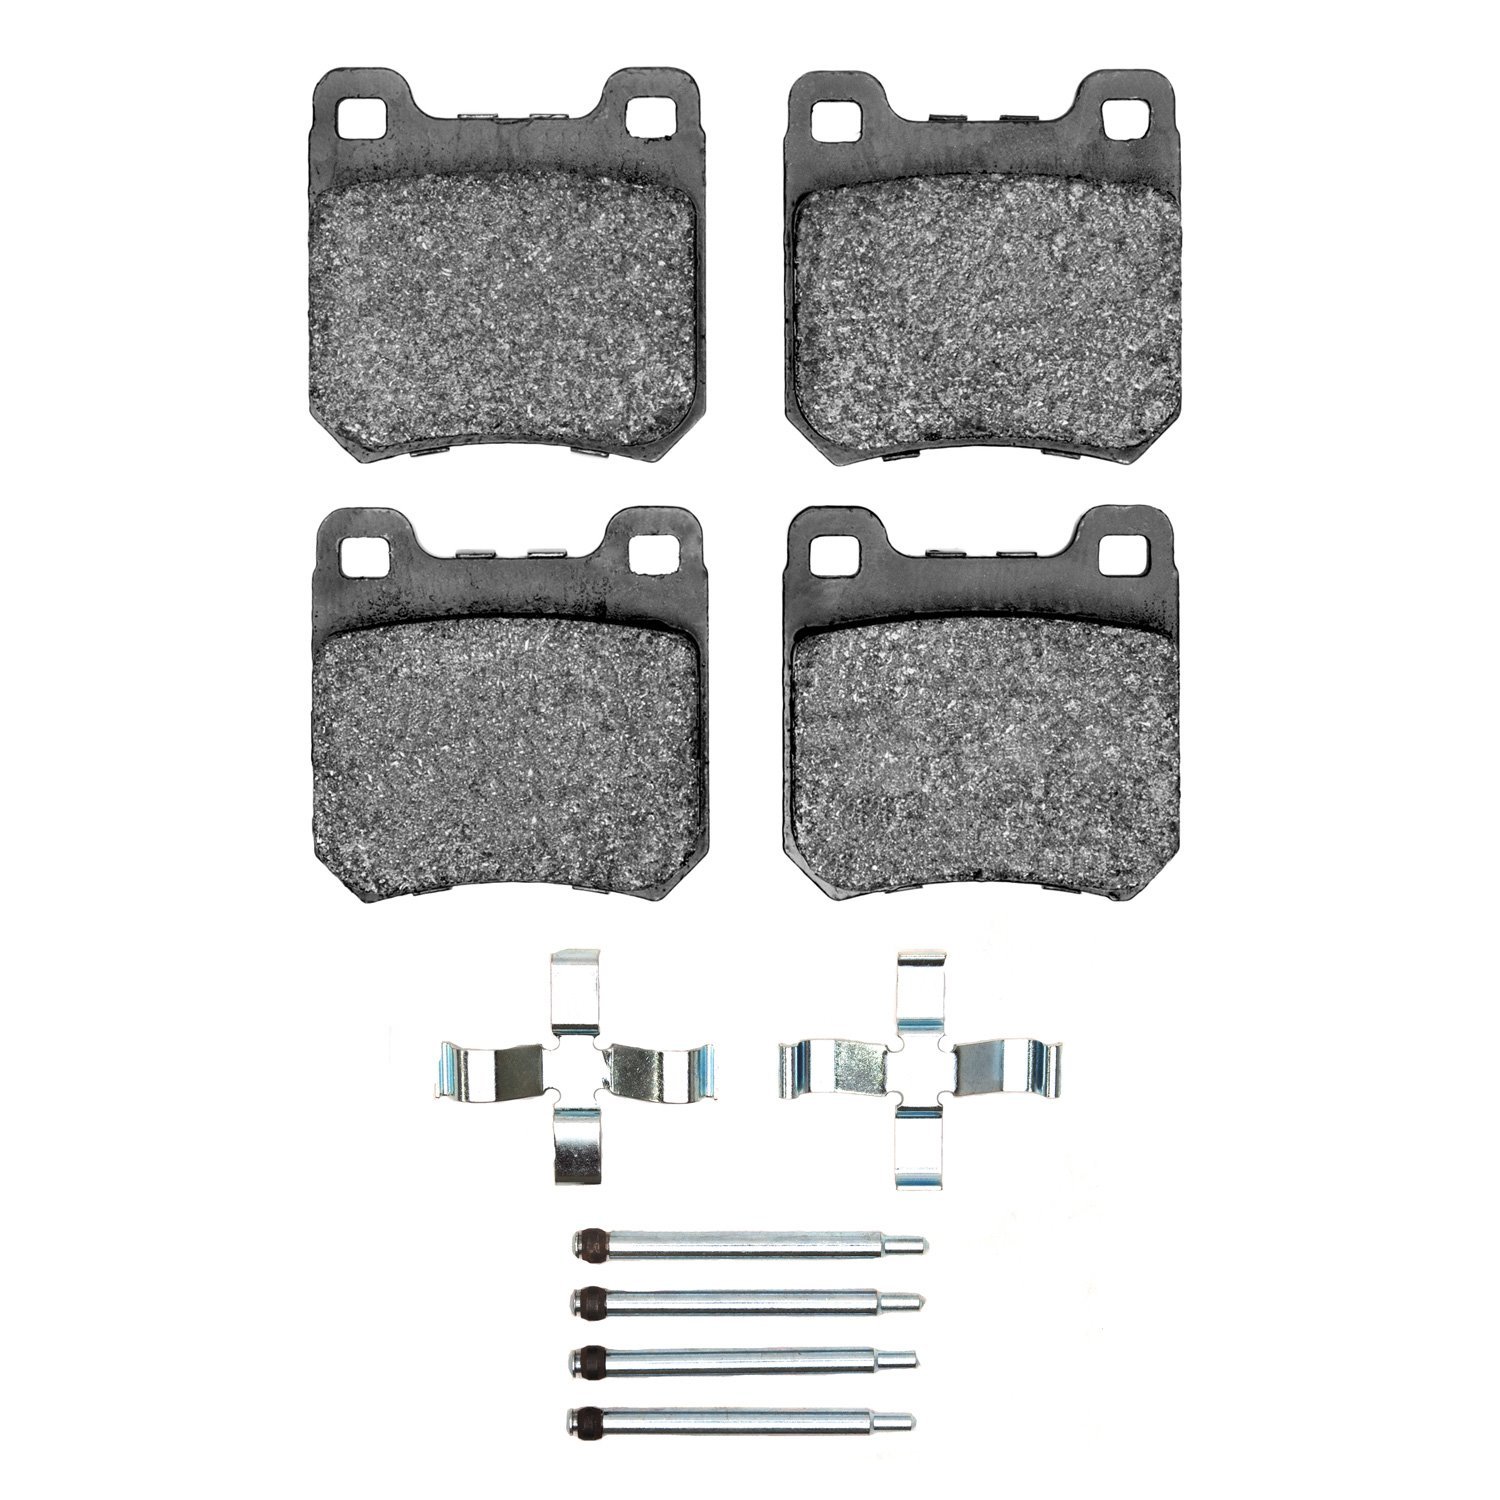 1310-0709-02 3000-Series Ceramic Brake Pads & Hardware Kit, 1997-2001 GM, Position: Rear